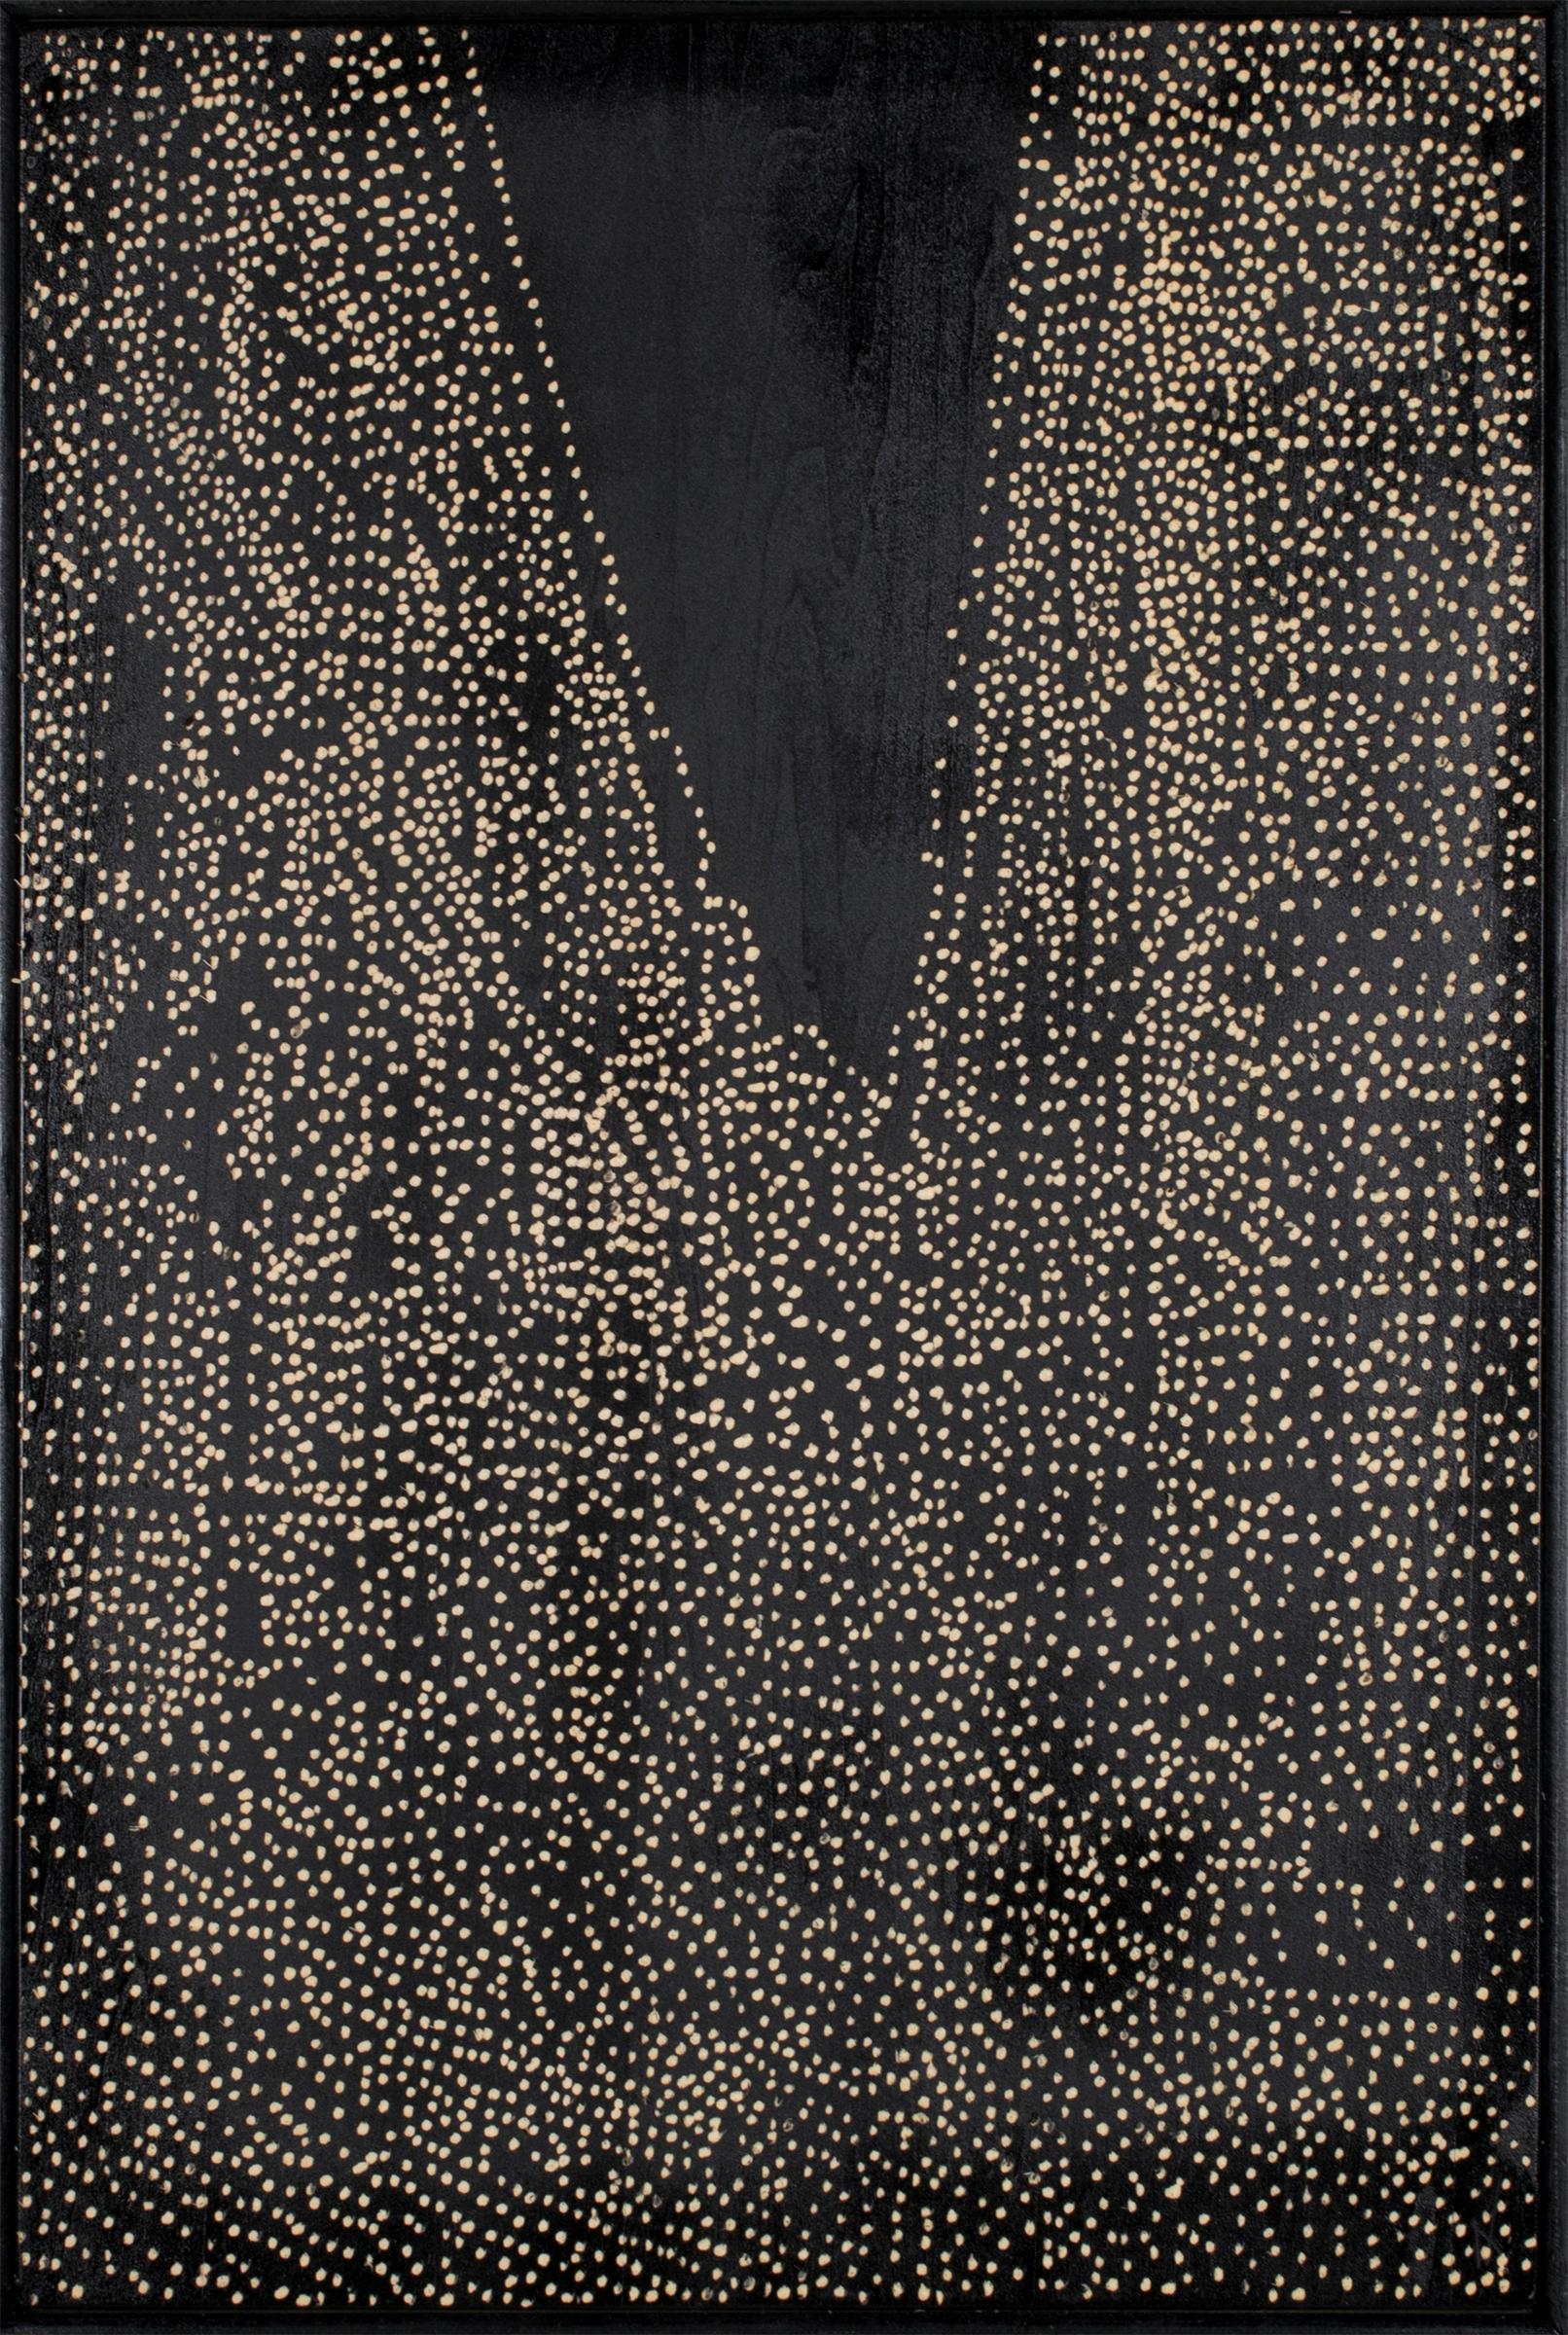 « Romé II », gravure sur bois pointilliste, 2012